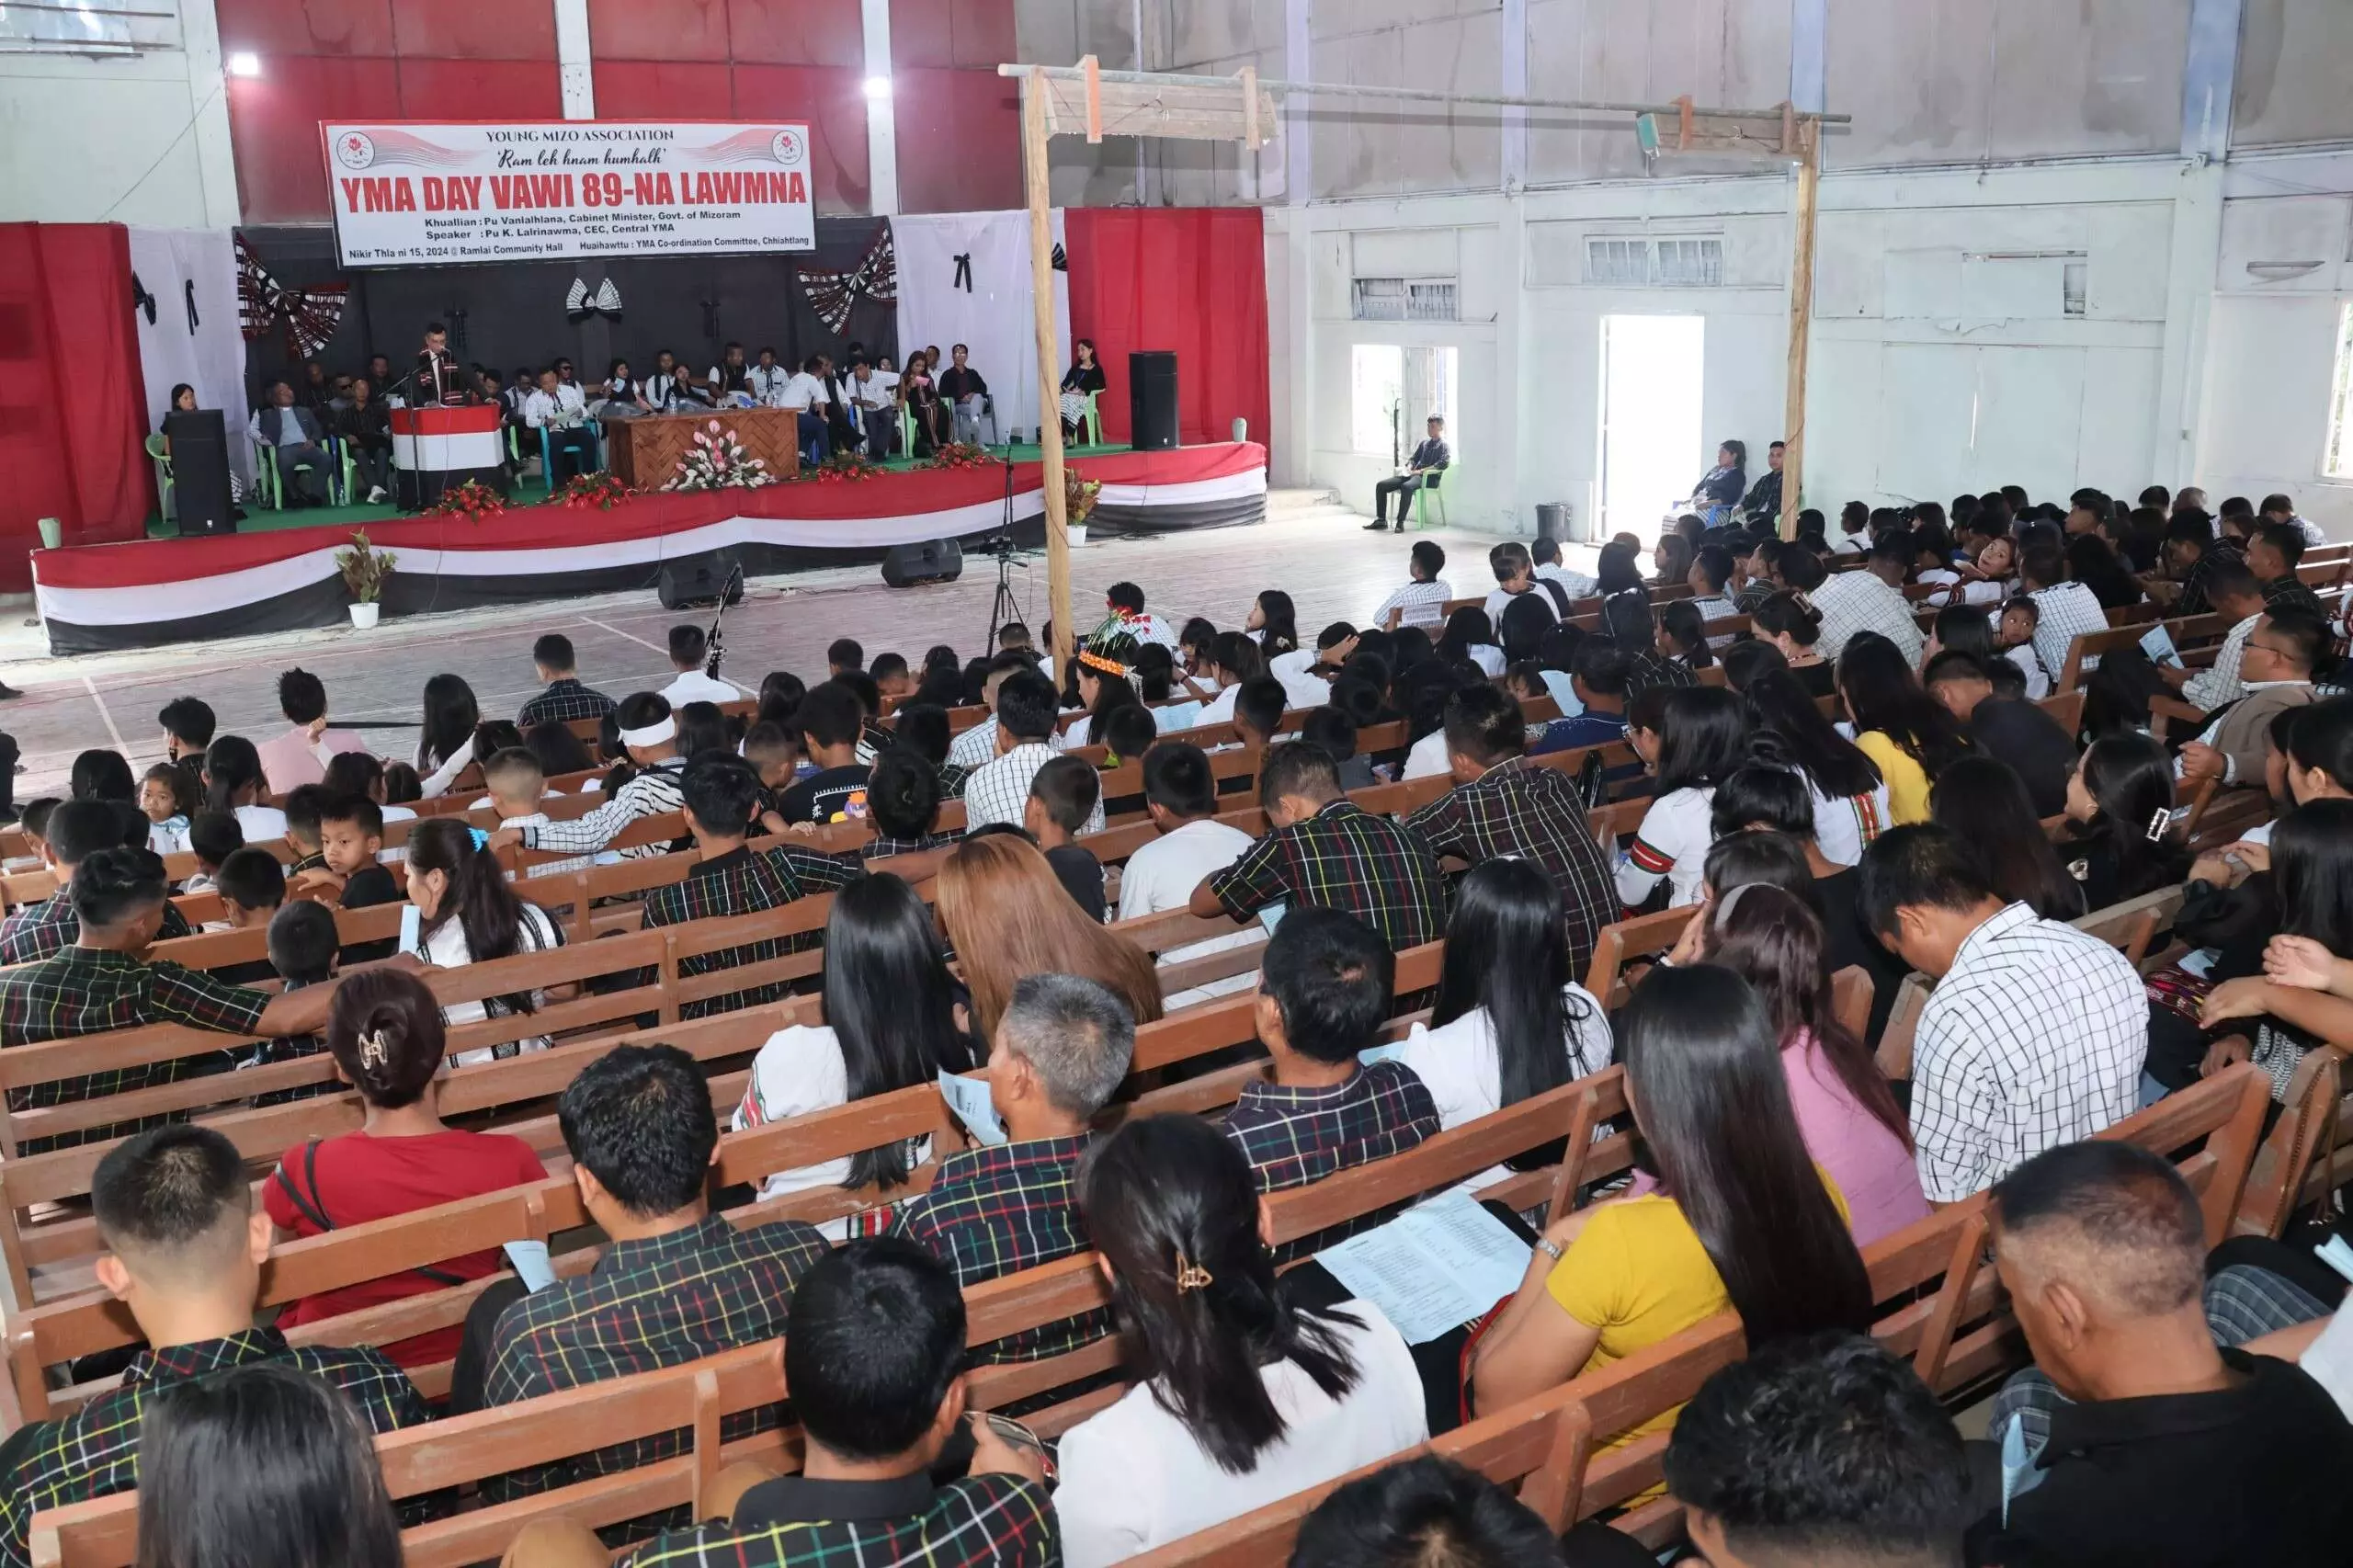 PWD मंत्री पु वनलालह्लाना ने चियाहत्लांग गांव में 89वां वाईएमए दिवस मनाया